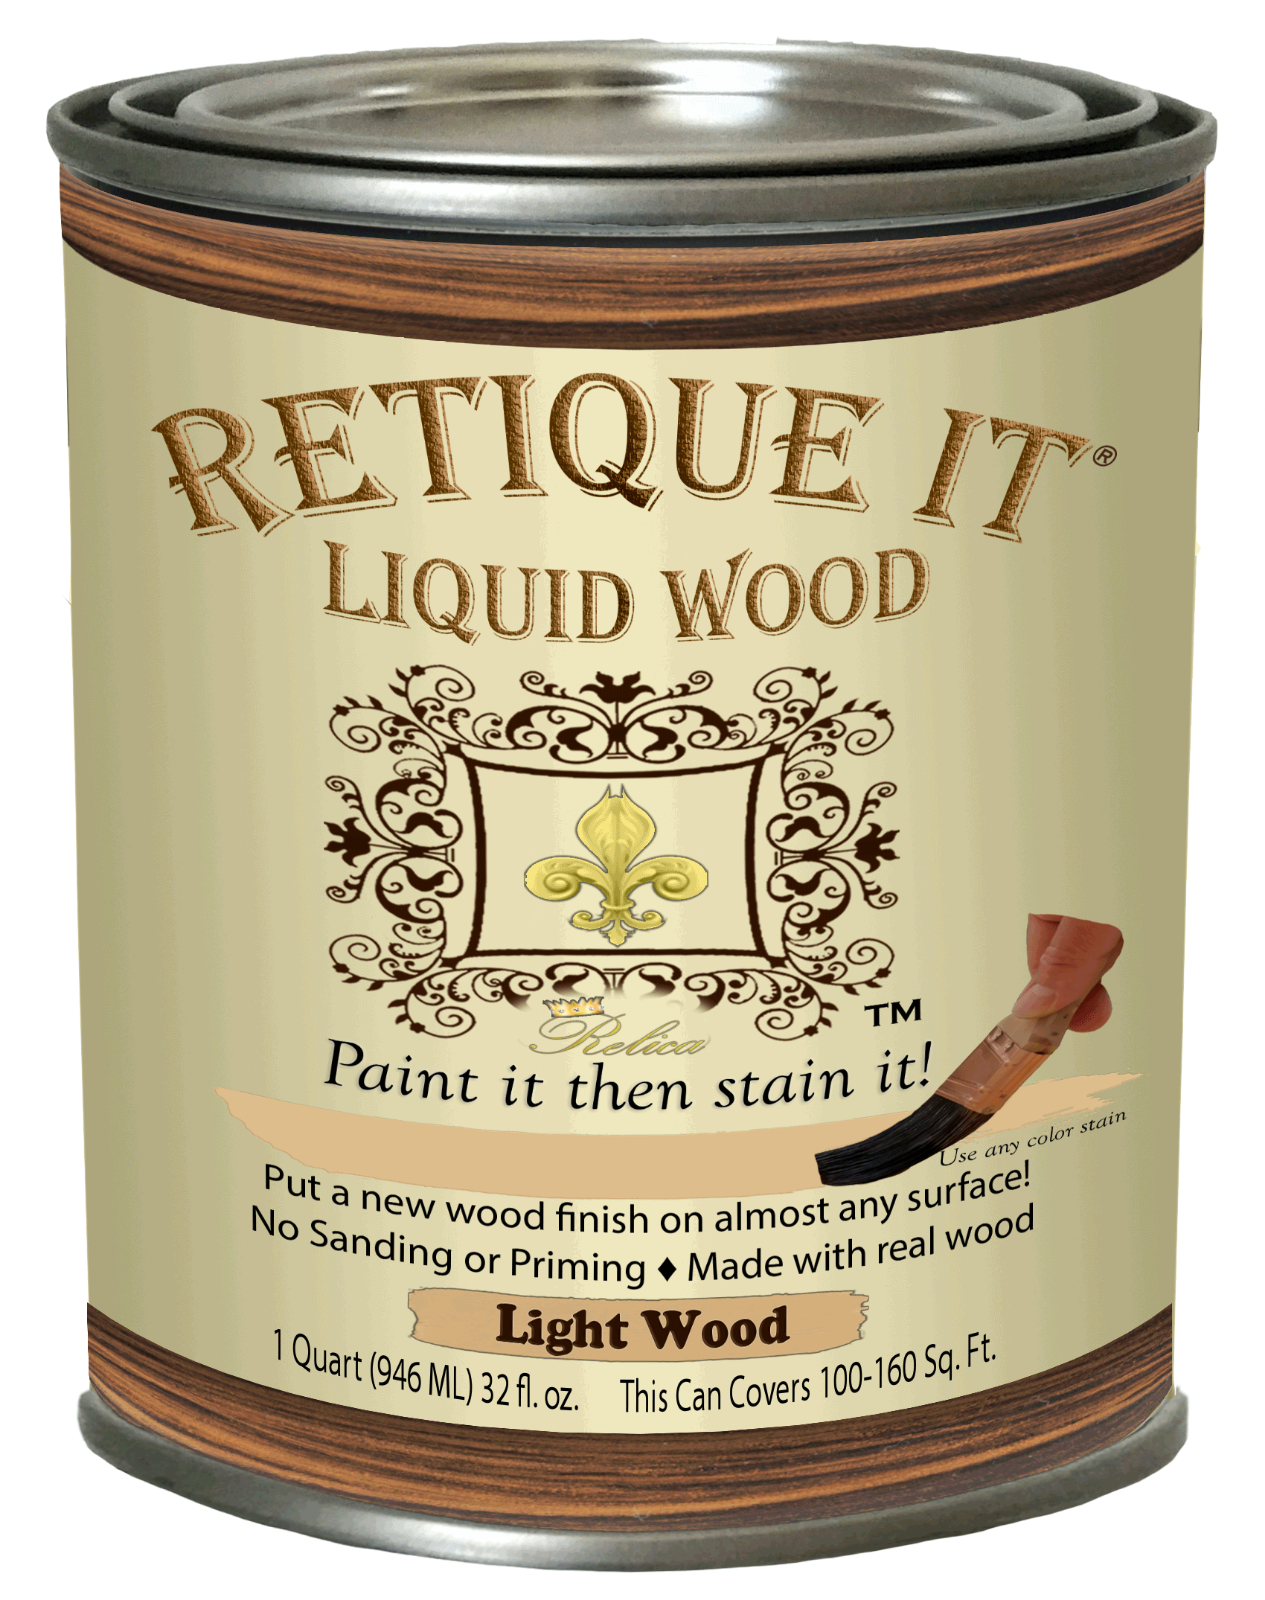 Retique It - Liquid Wood - Great Chalk Furniture Paint Companion